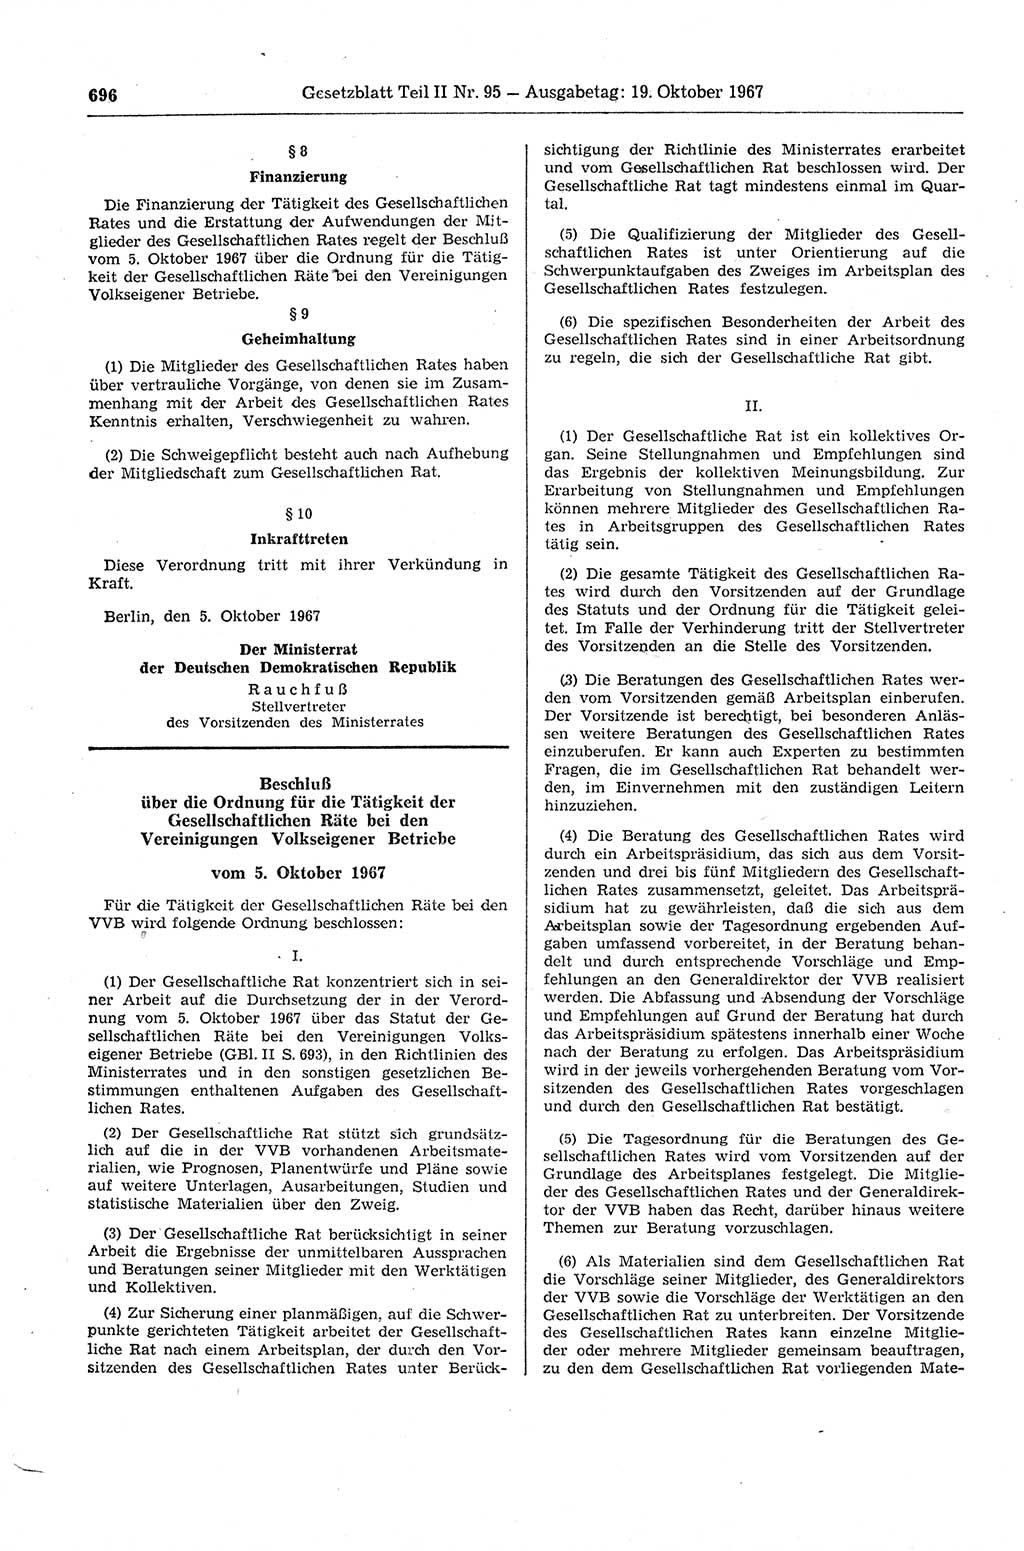 Gesetzblatt (GBl.) der Deutschen Demokratischen Republik (DDR) Teil ⅠⅠ 1967, Seite 696 (GBl. DDR ⅠⅠ 1967, S. 696)